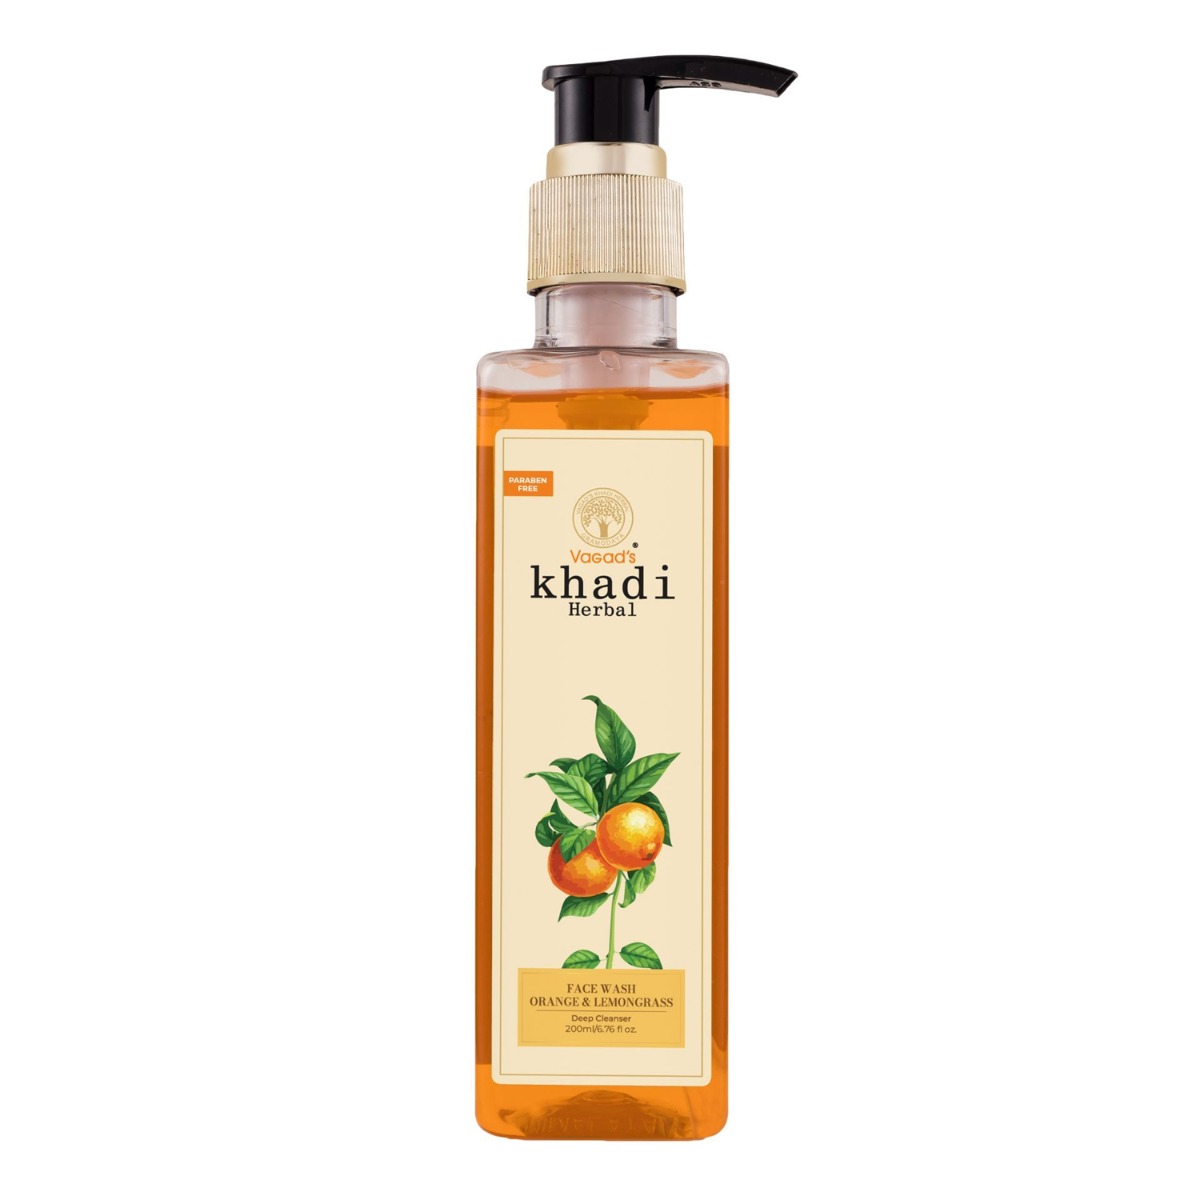 Vagad's Khadi Orange & Lemongrass Face Wash, 200ml